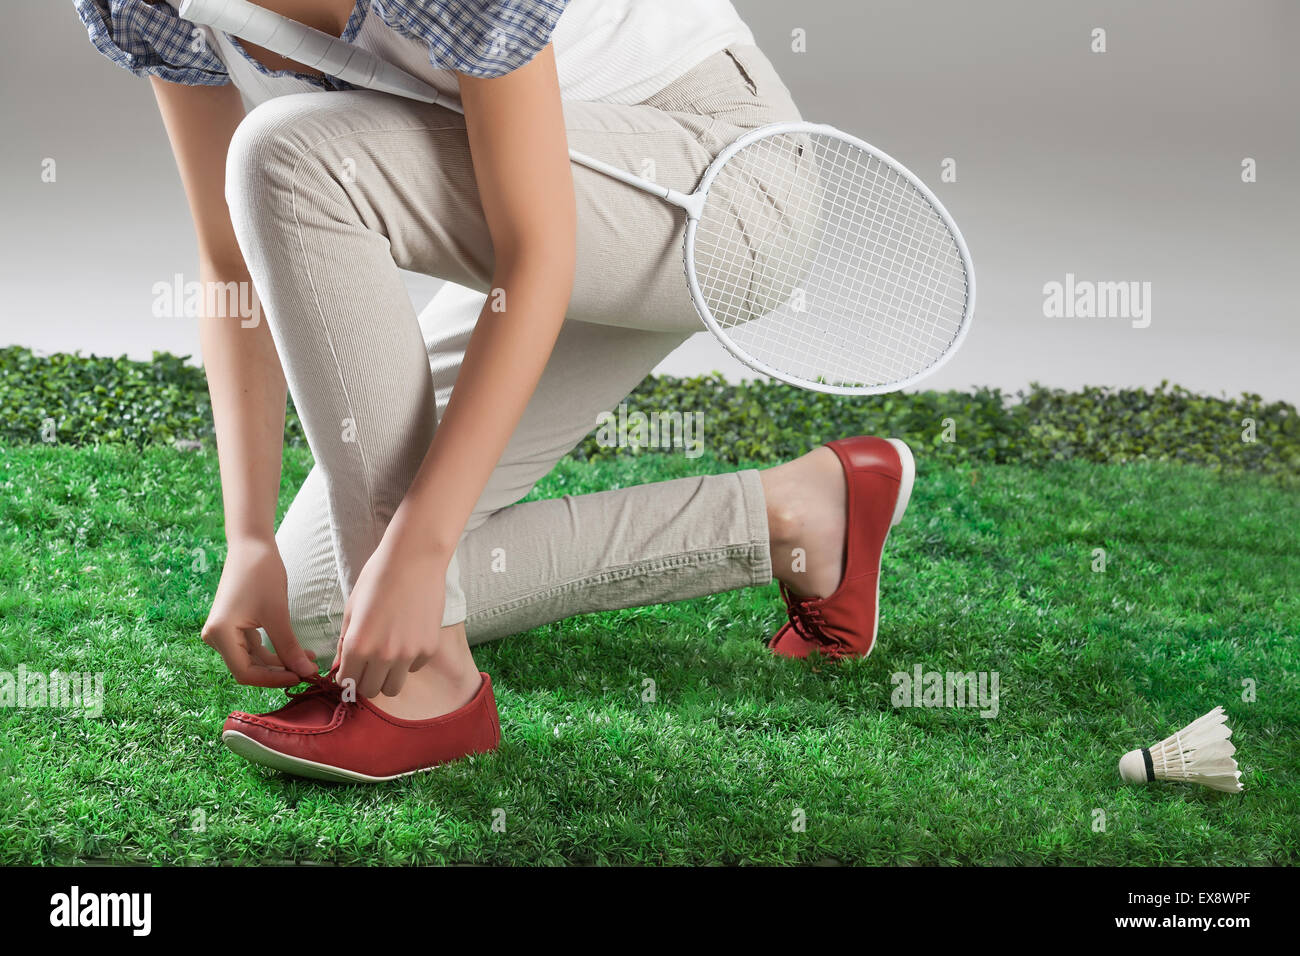 Frau Frauen weibliche Weiblichkeit Badminton Bein Schläger Federball Grasgrün Sport Natur Körper Teil schließen sich Outdoor-Schuhe Stockfoto